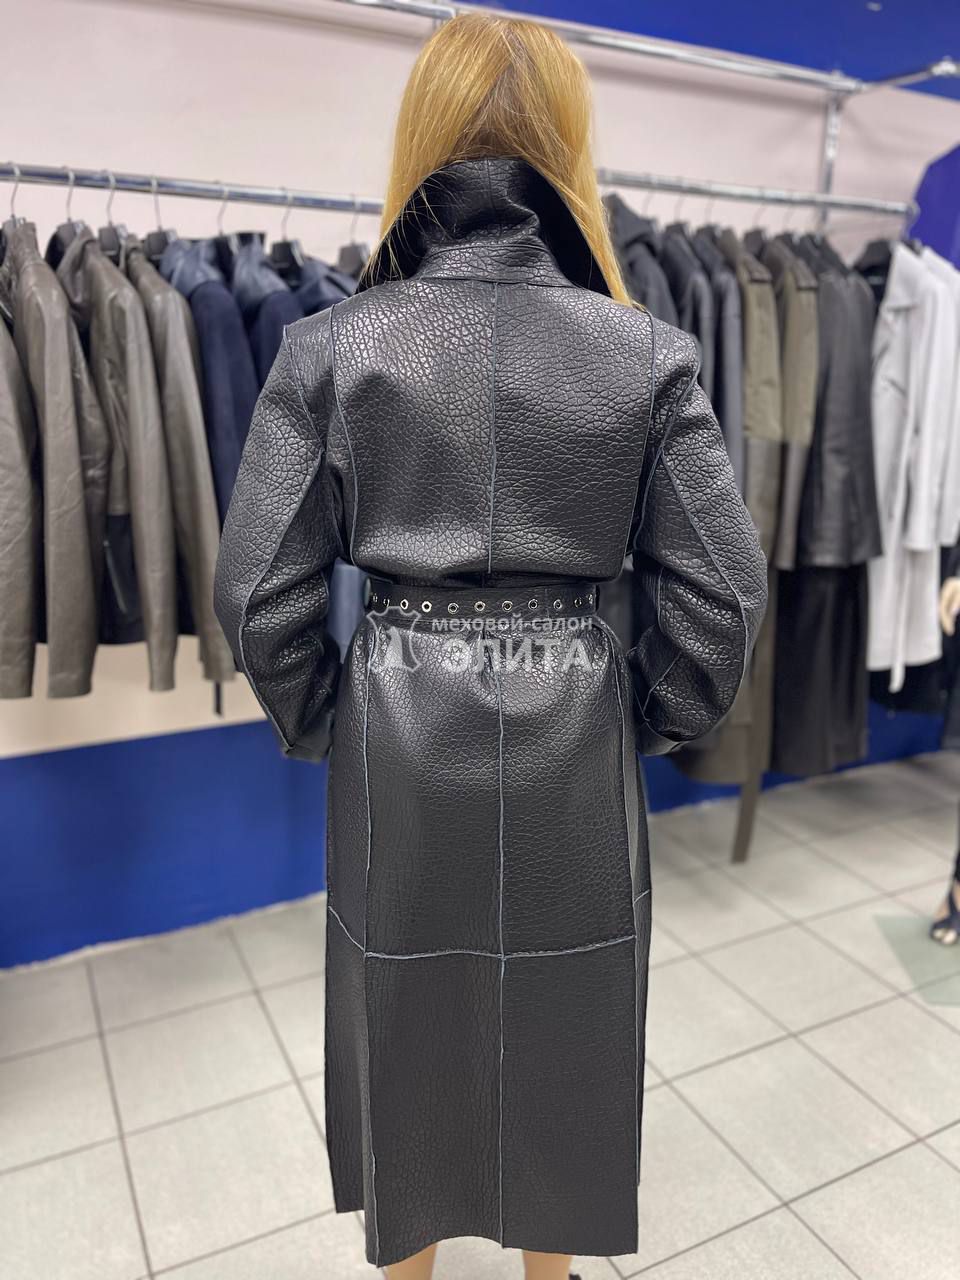 Кожаное пальто м-2825 р-р 46-50, цена 65600 рублей в интернет-магазине кожи и меха ЭЛИТА. Вид 2